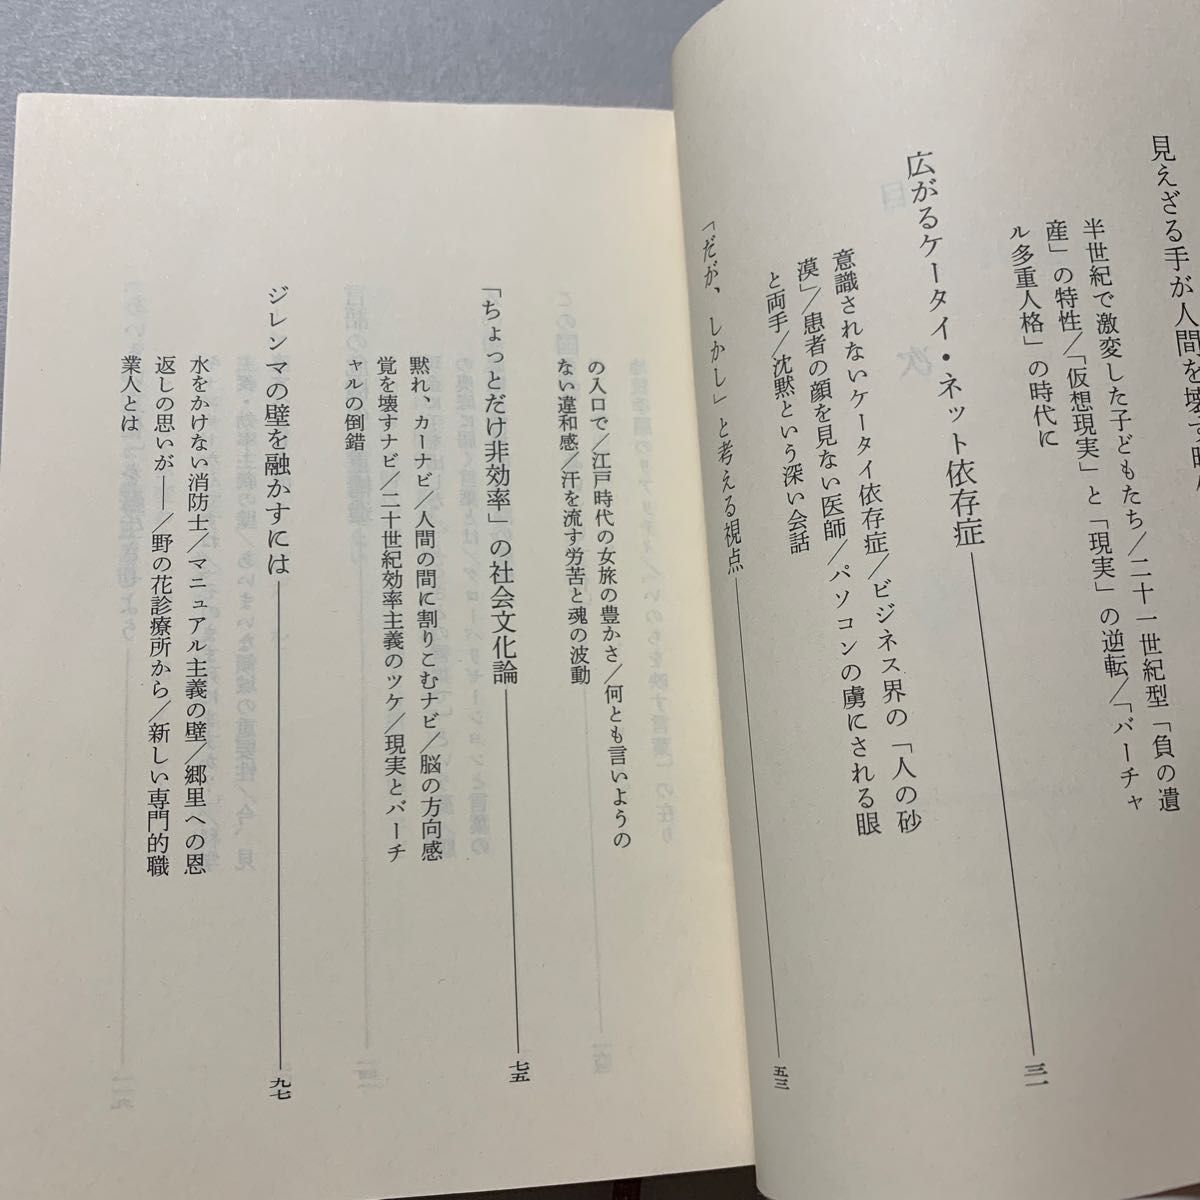 壊れる日本人　ケータイ・ネット依存症への告別 （新潮文庫　や－８－２０） 柳田邦男／著